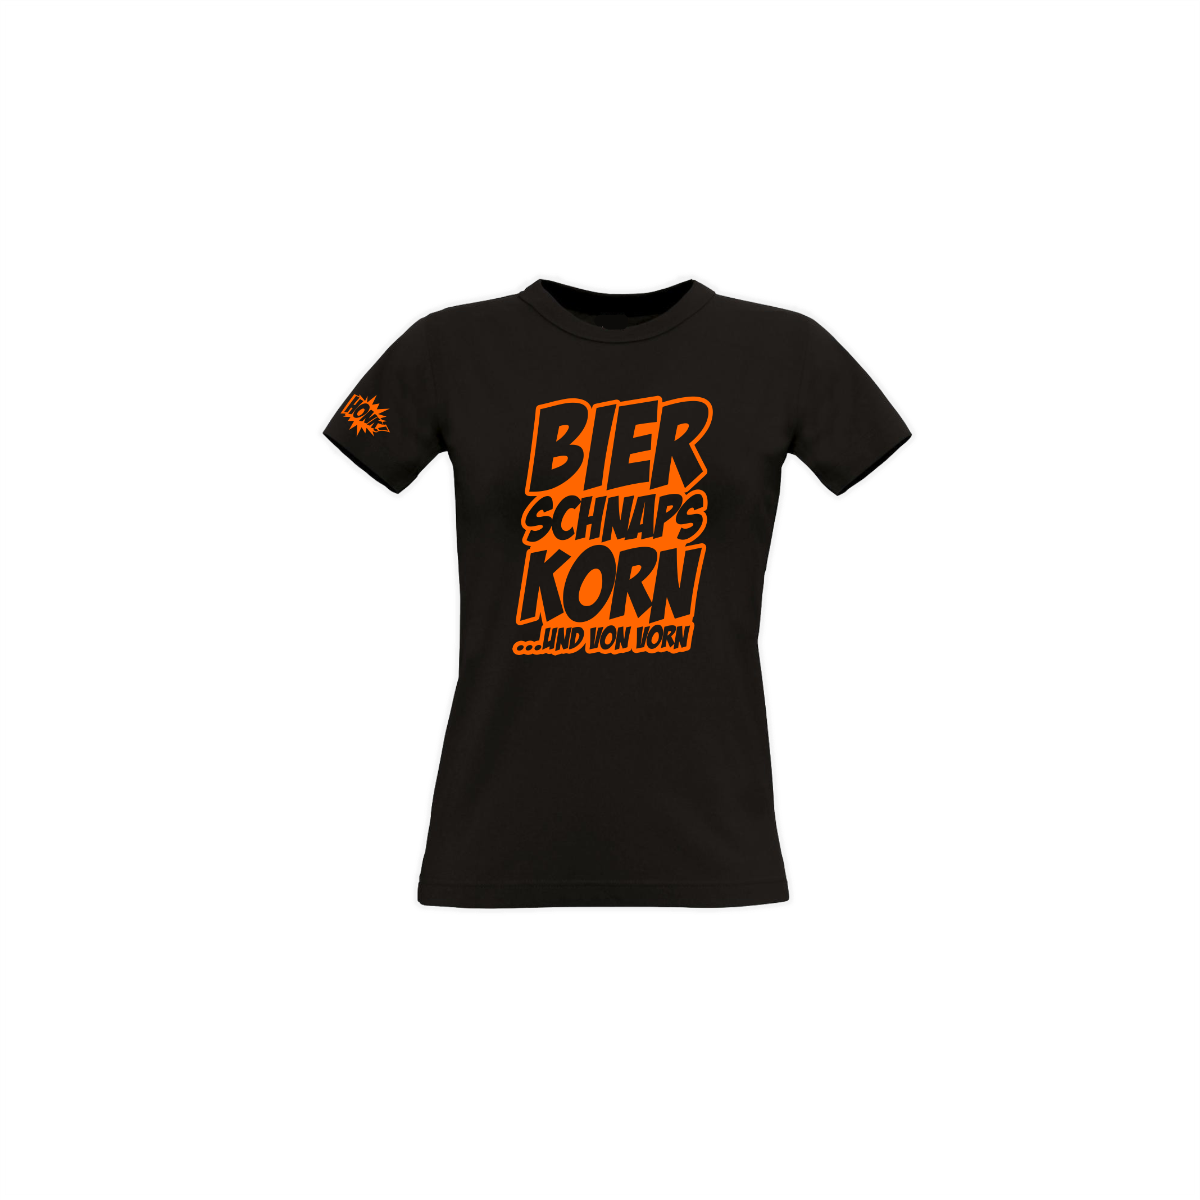 Girly-Shirt "BIER SCHNAPS KORN" schwarz